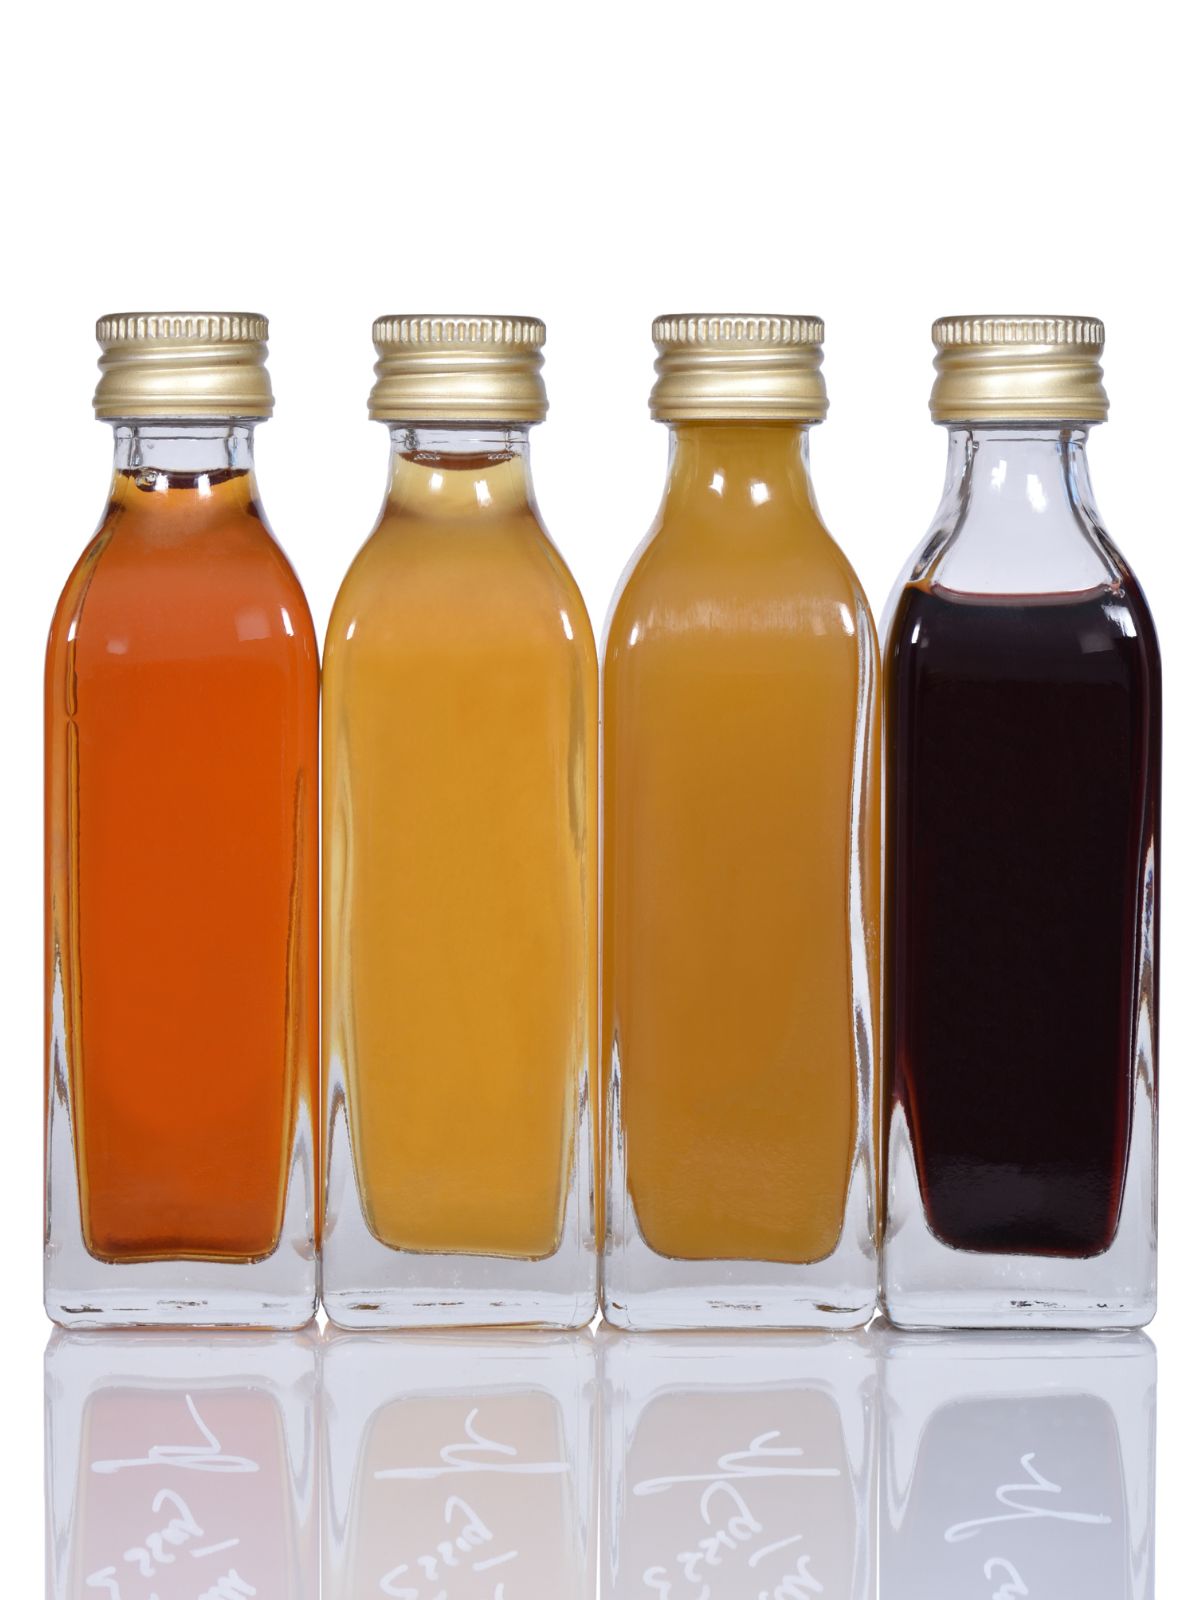 bottles of different types of vinegar.